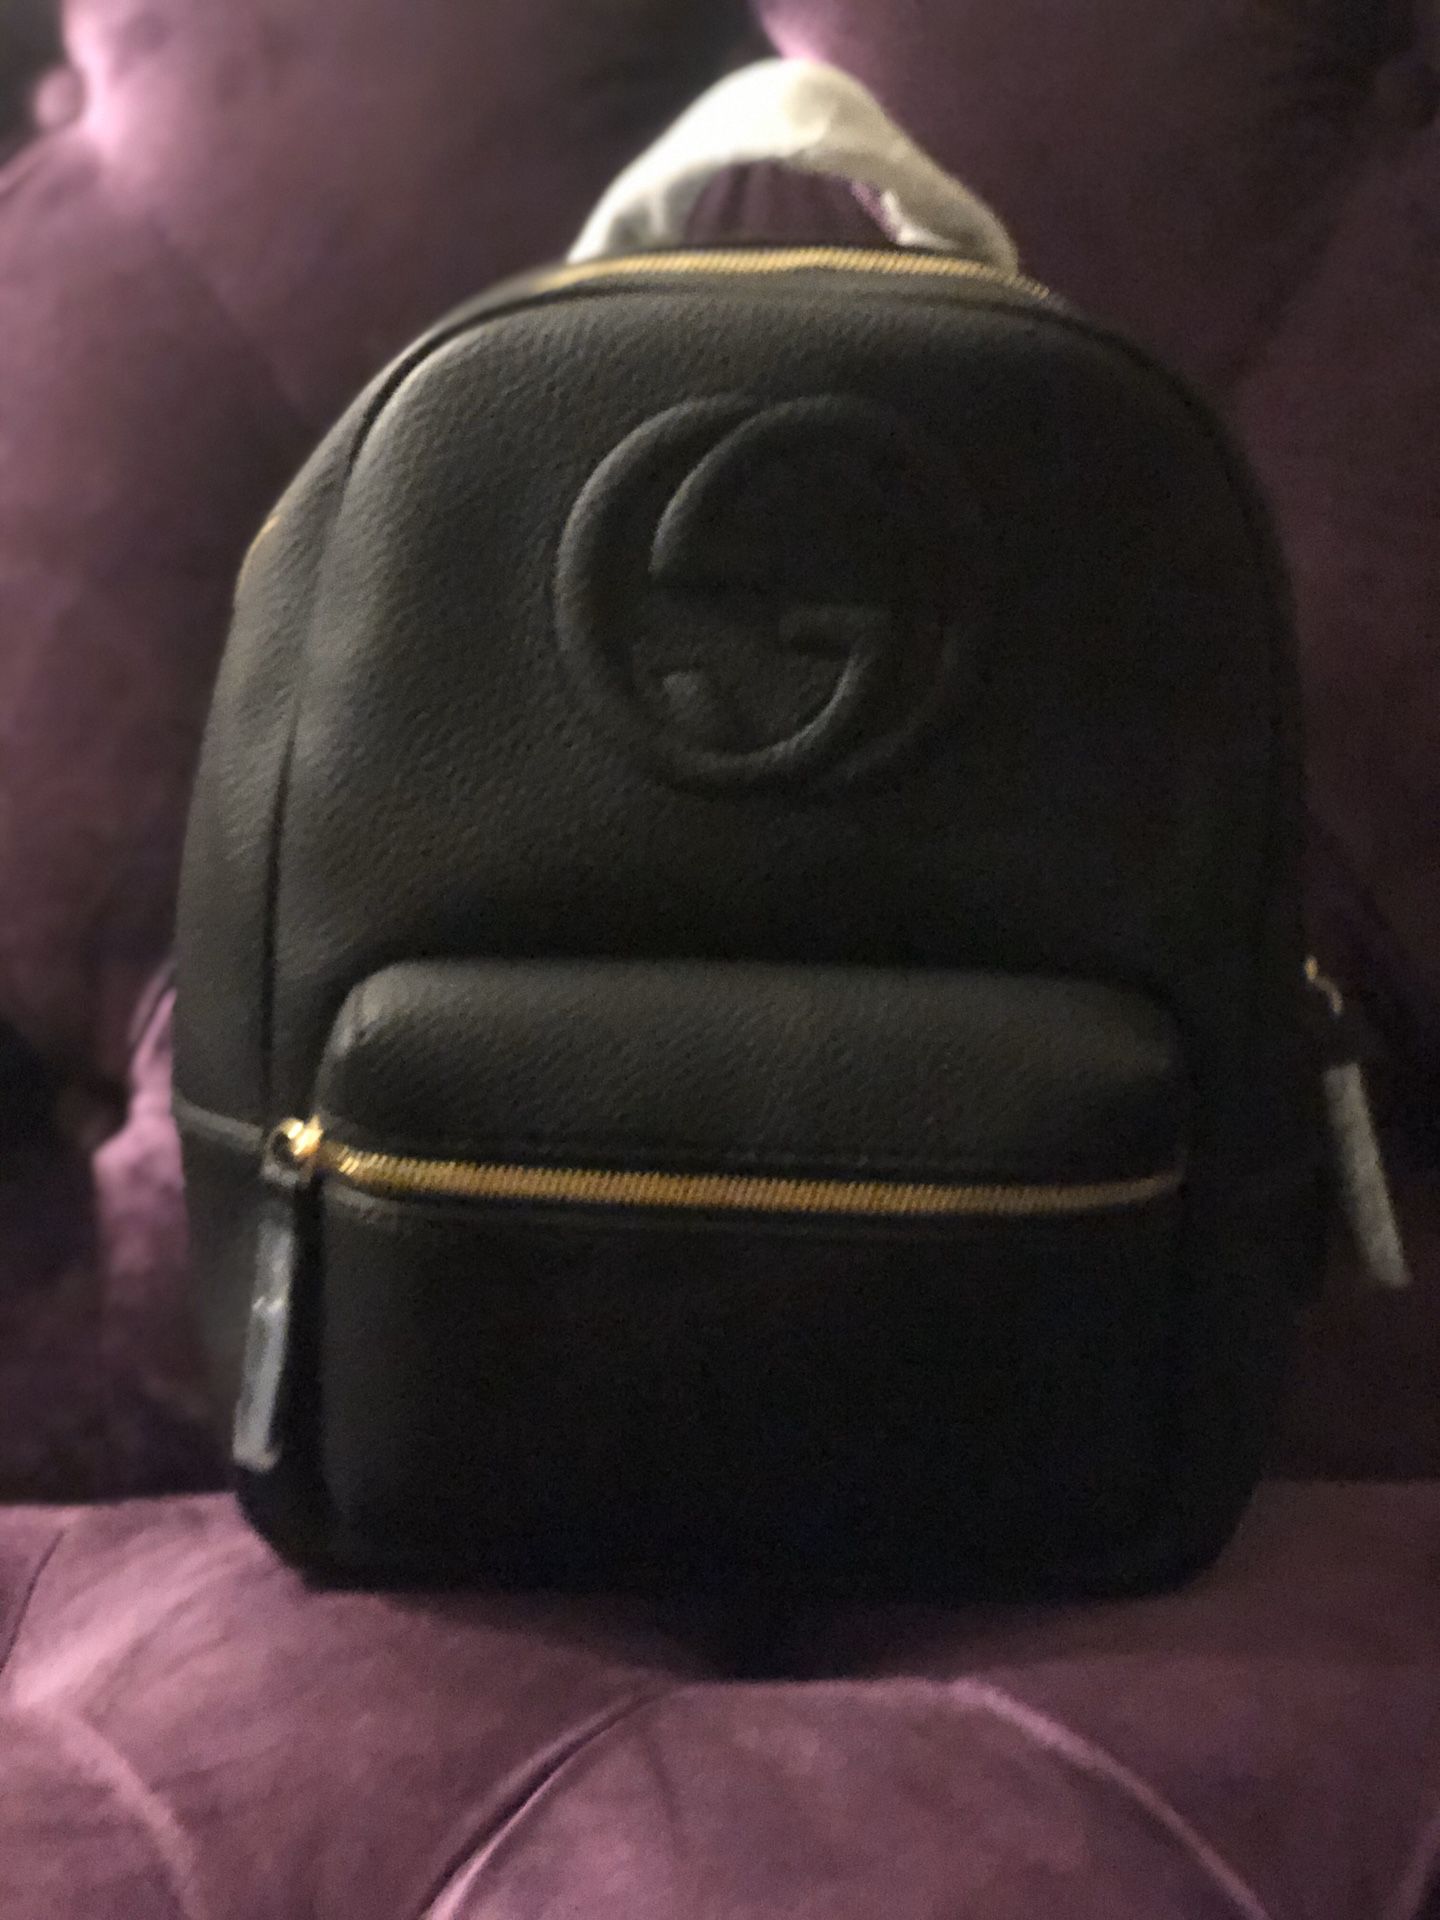 Medium size black leather backpack